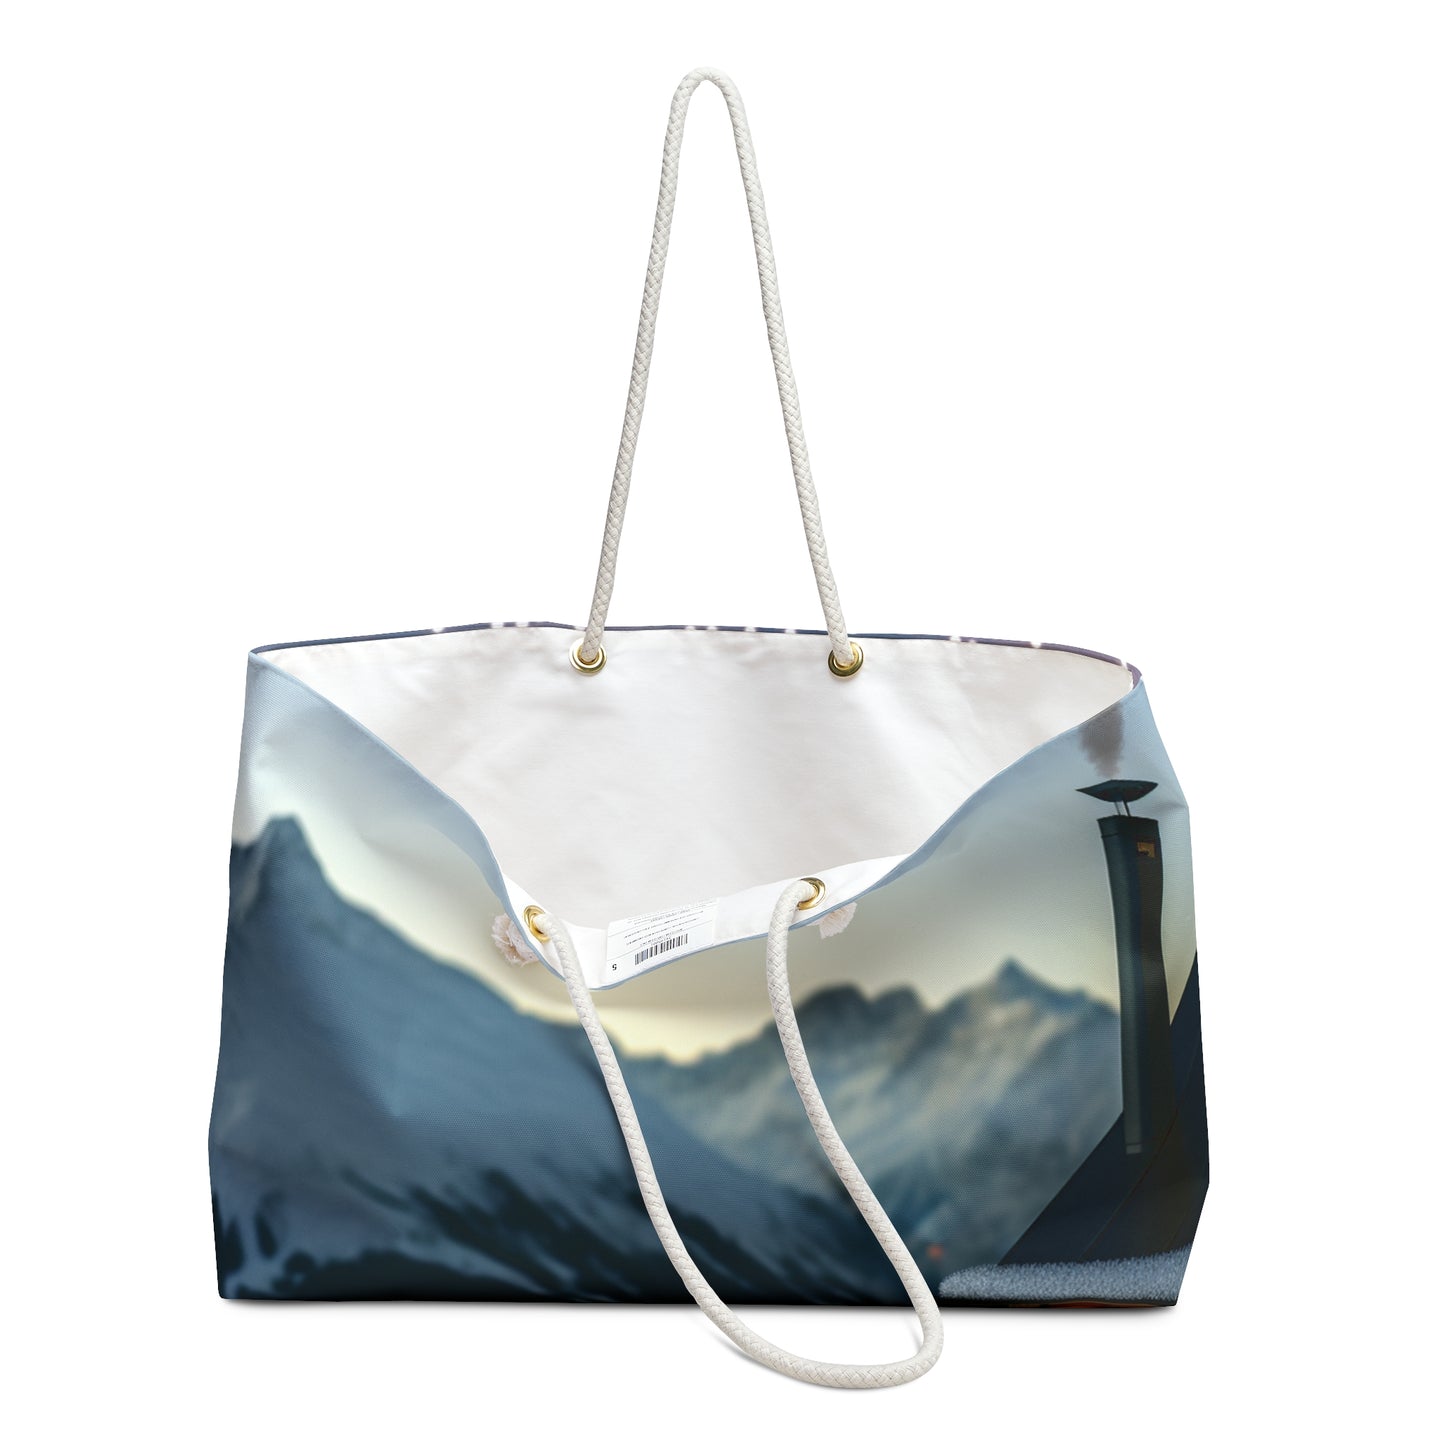 "Winter Hideaway" - The Alien Weekender Bag Photorealism Style